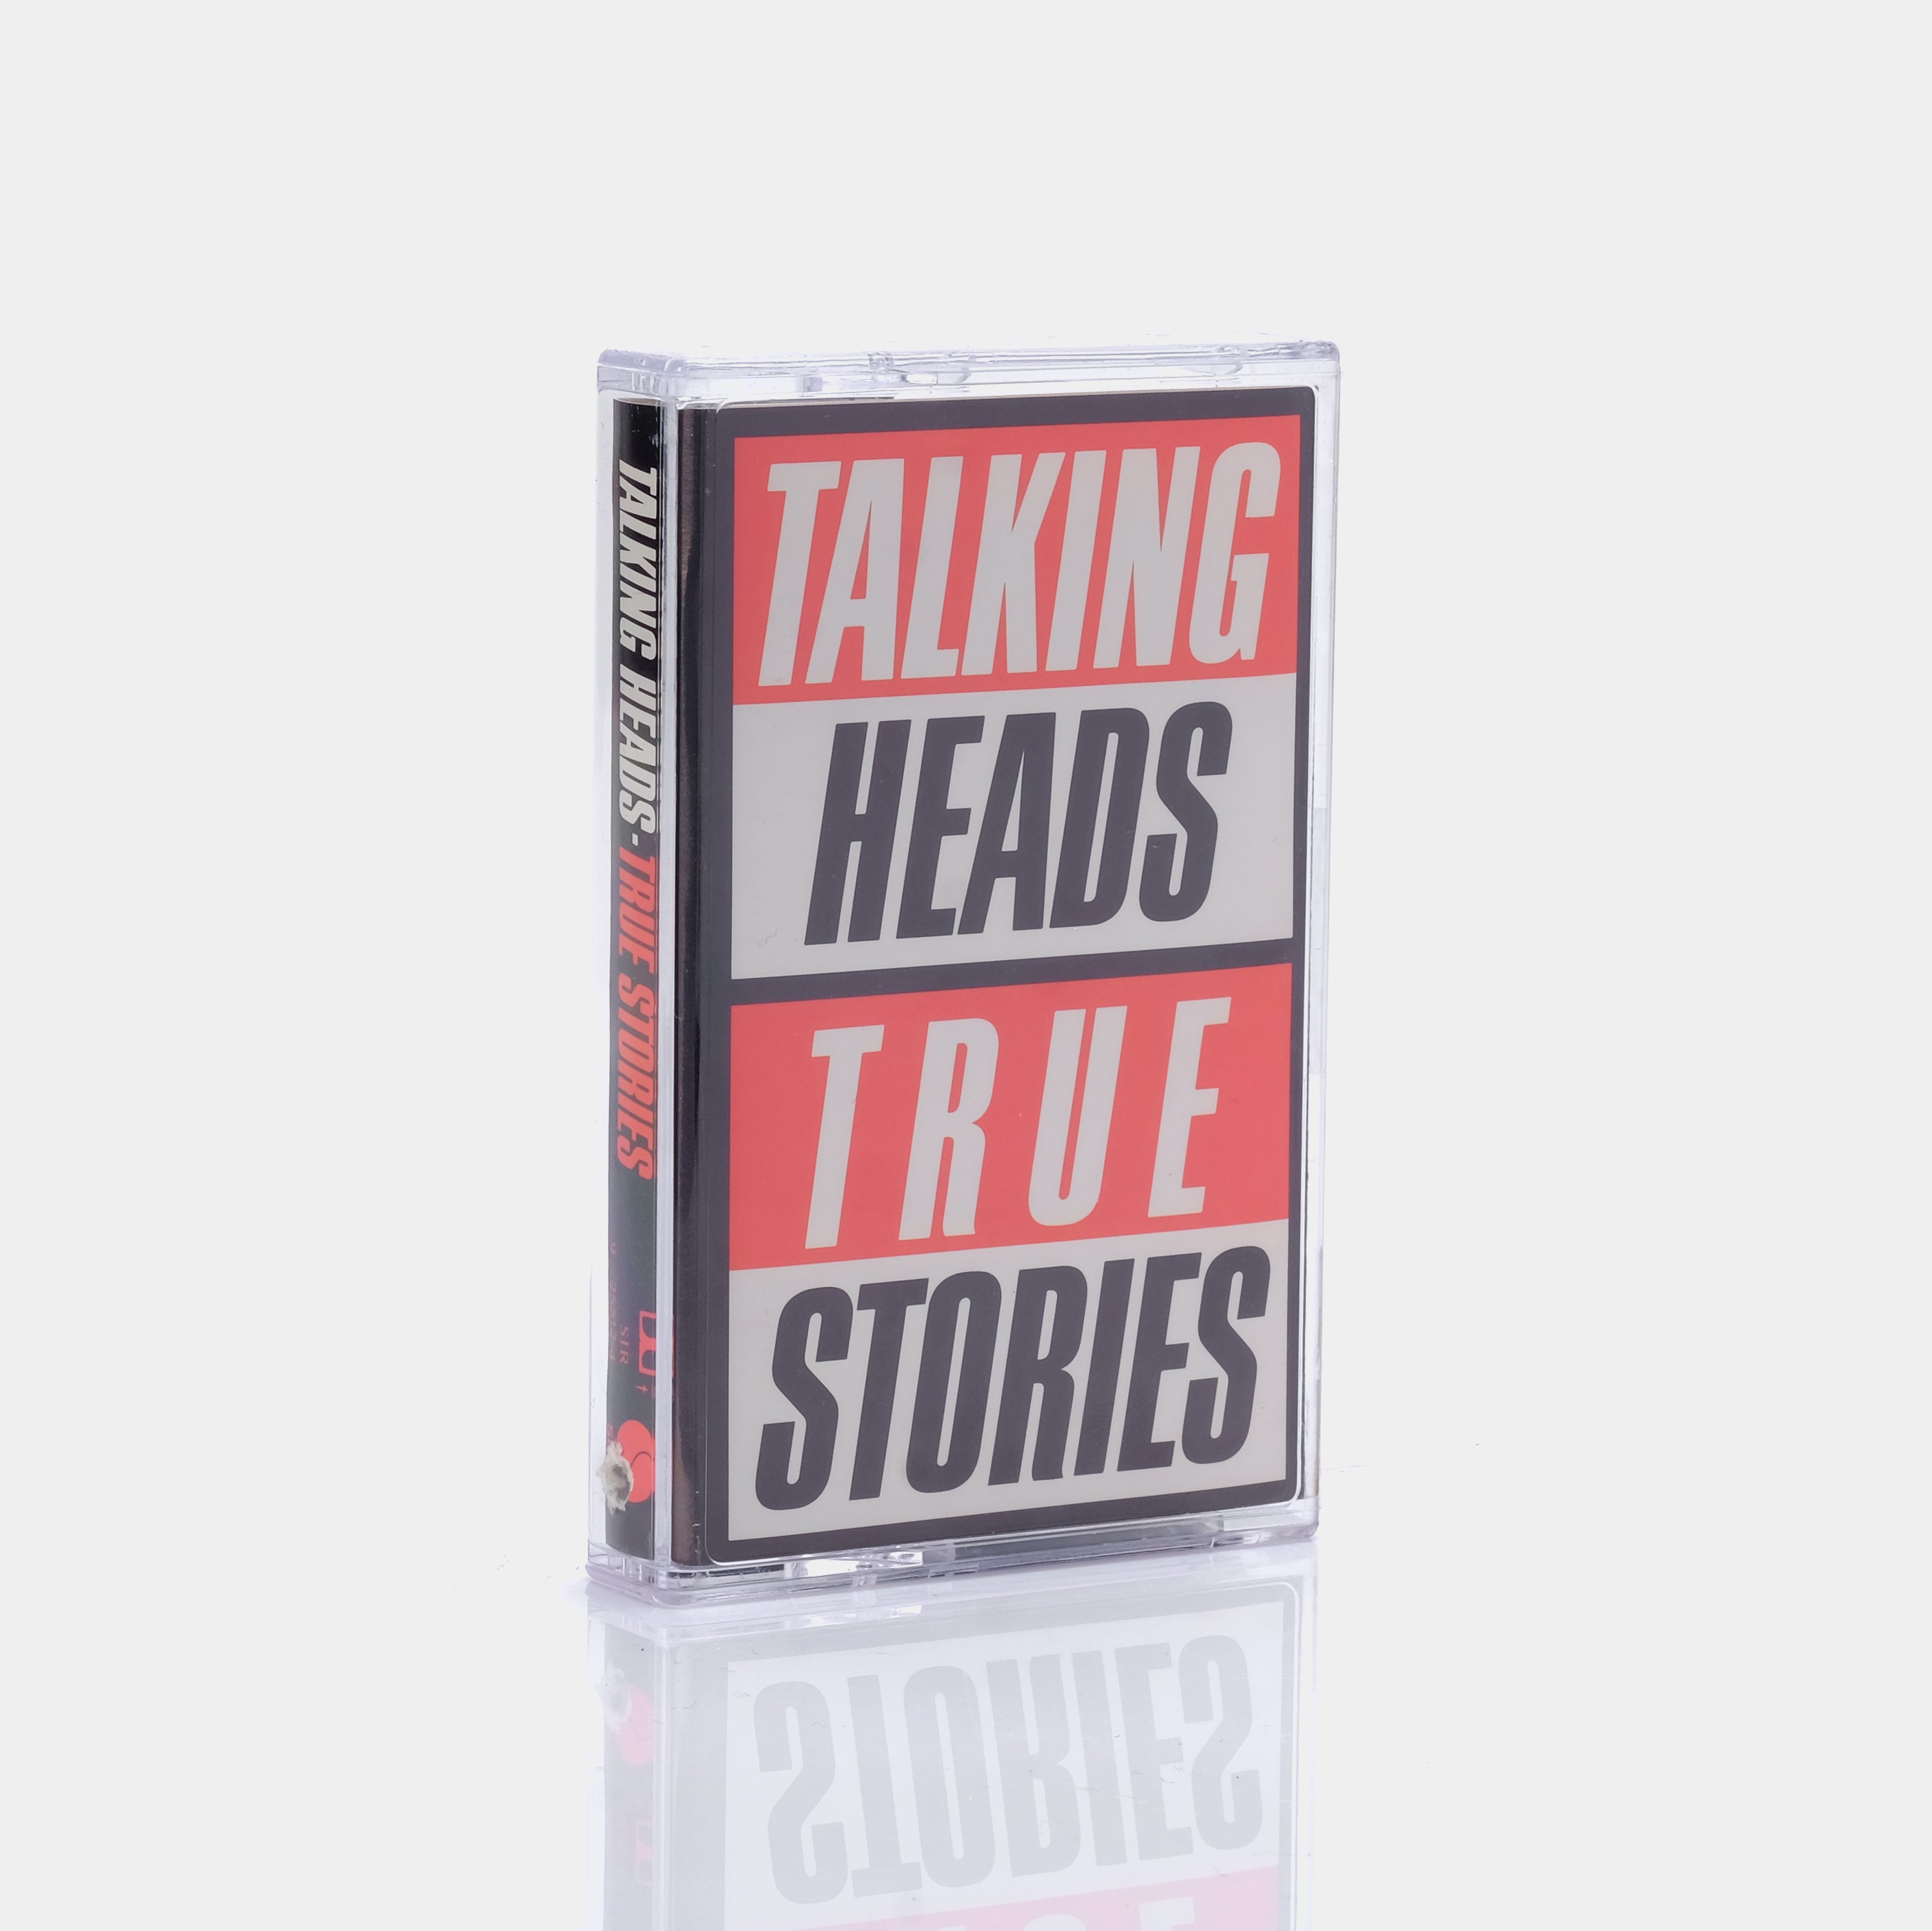 Talking Heads - True Stories Cassette Tape